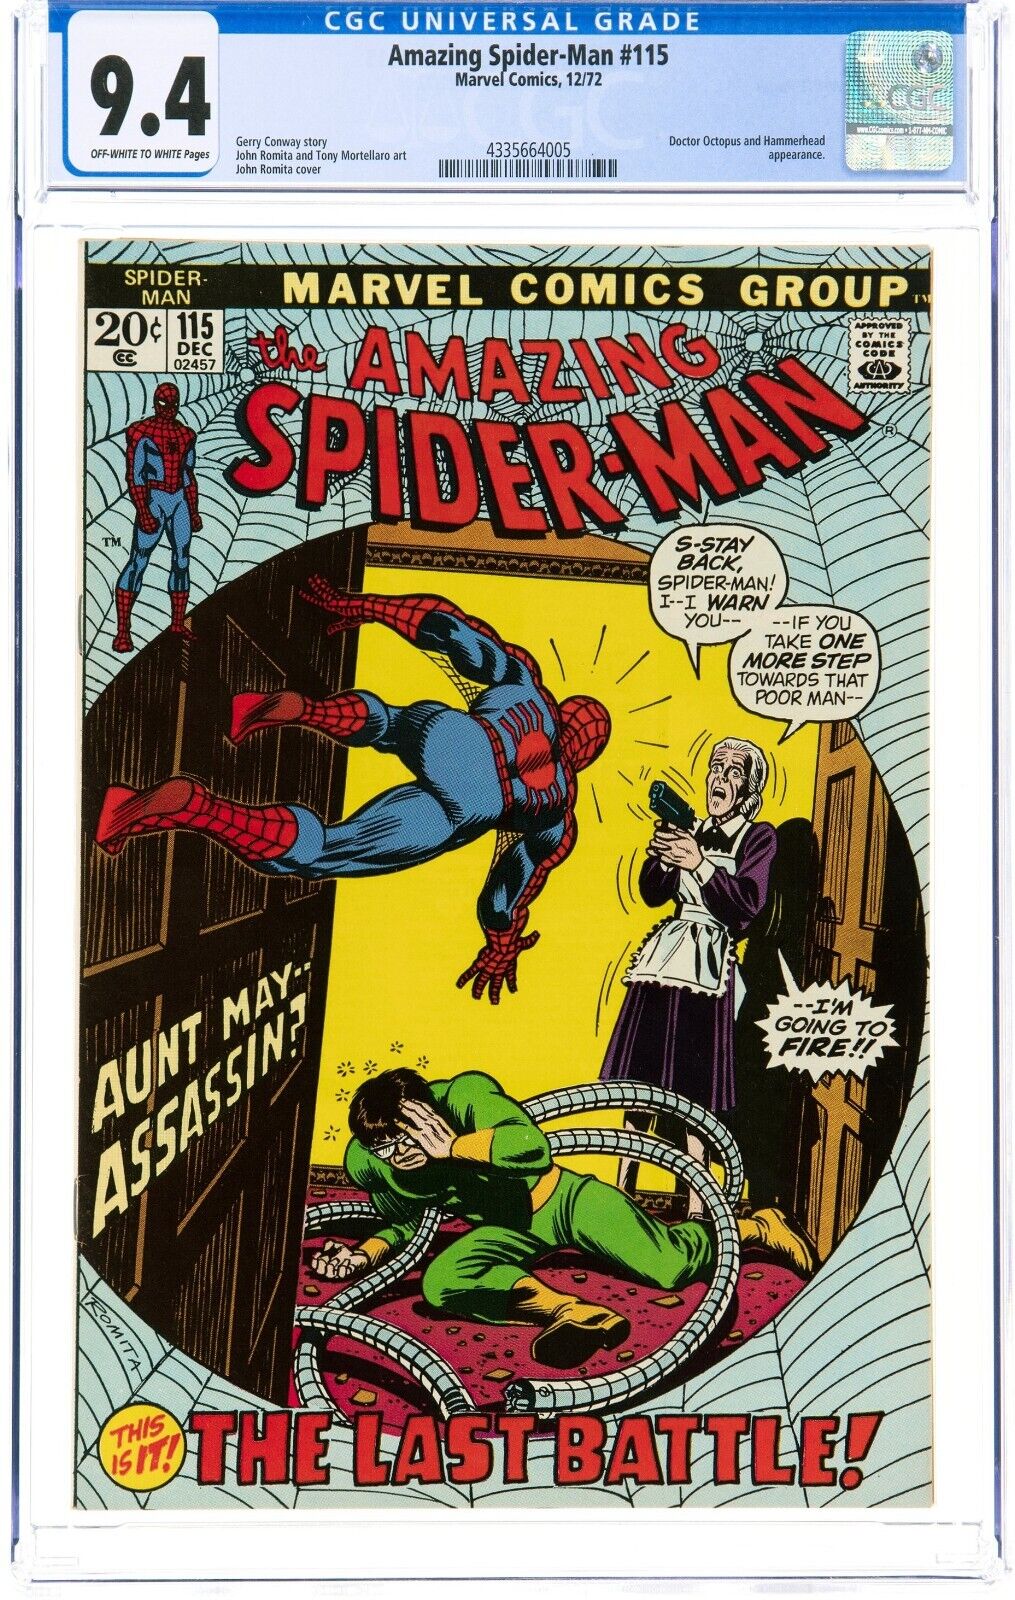 AMAZING SPIDER-MAN #115 CGC 9.4 OW-W MARVEL COMICS DEC 1972 DR OCTOPUS NEW CASE